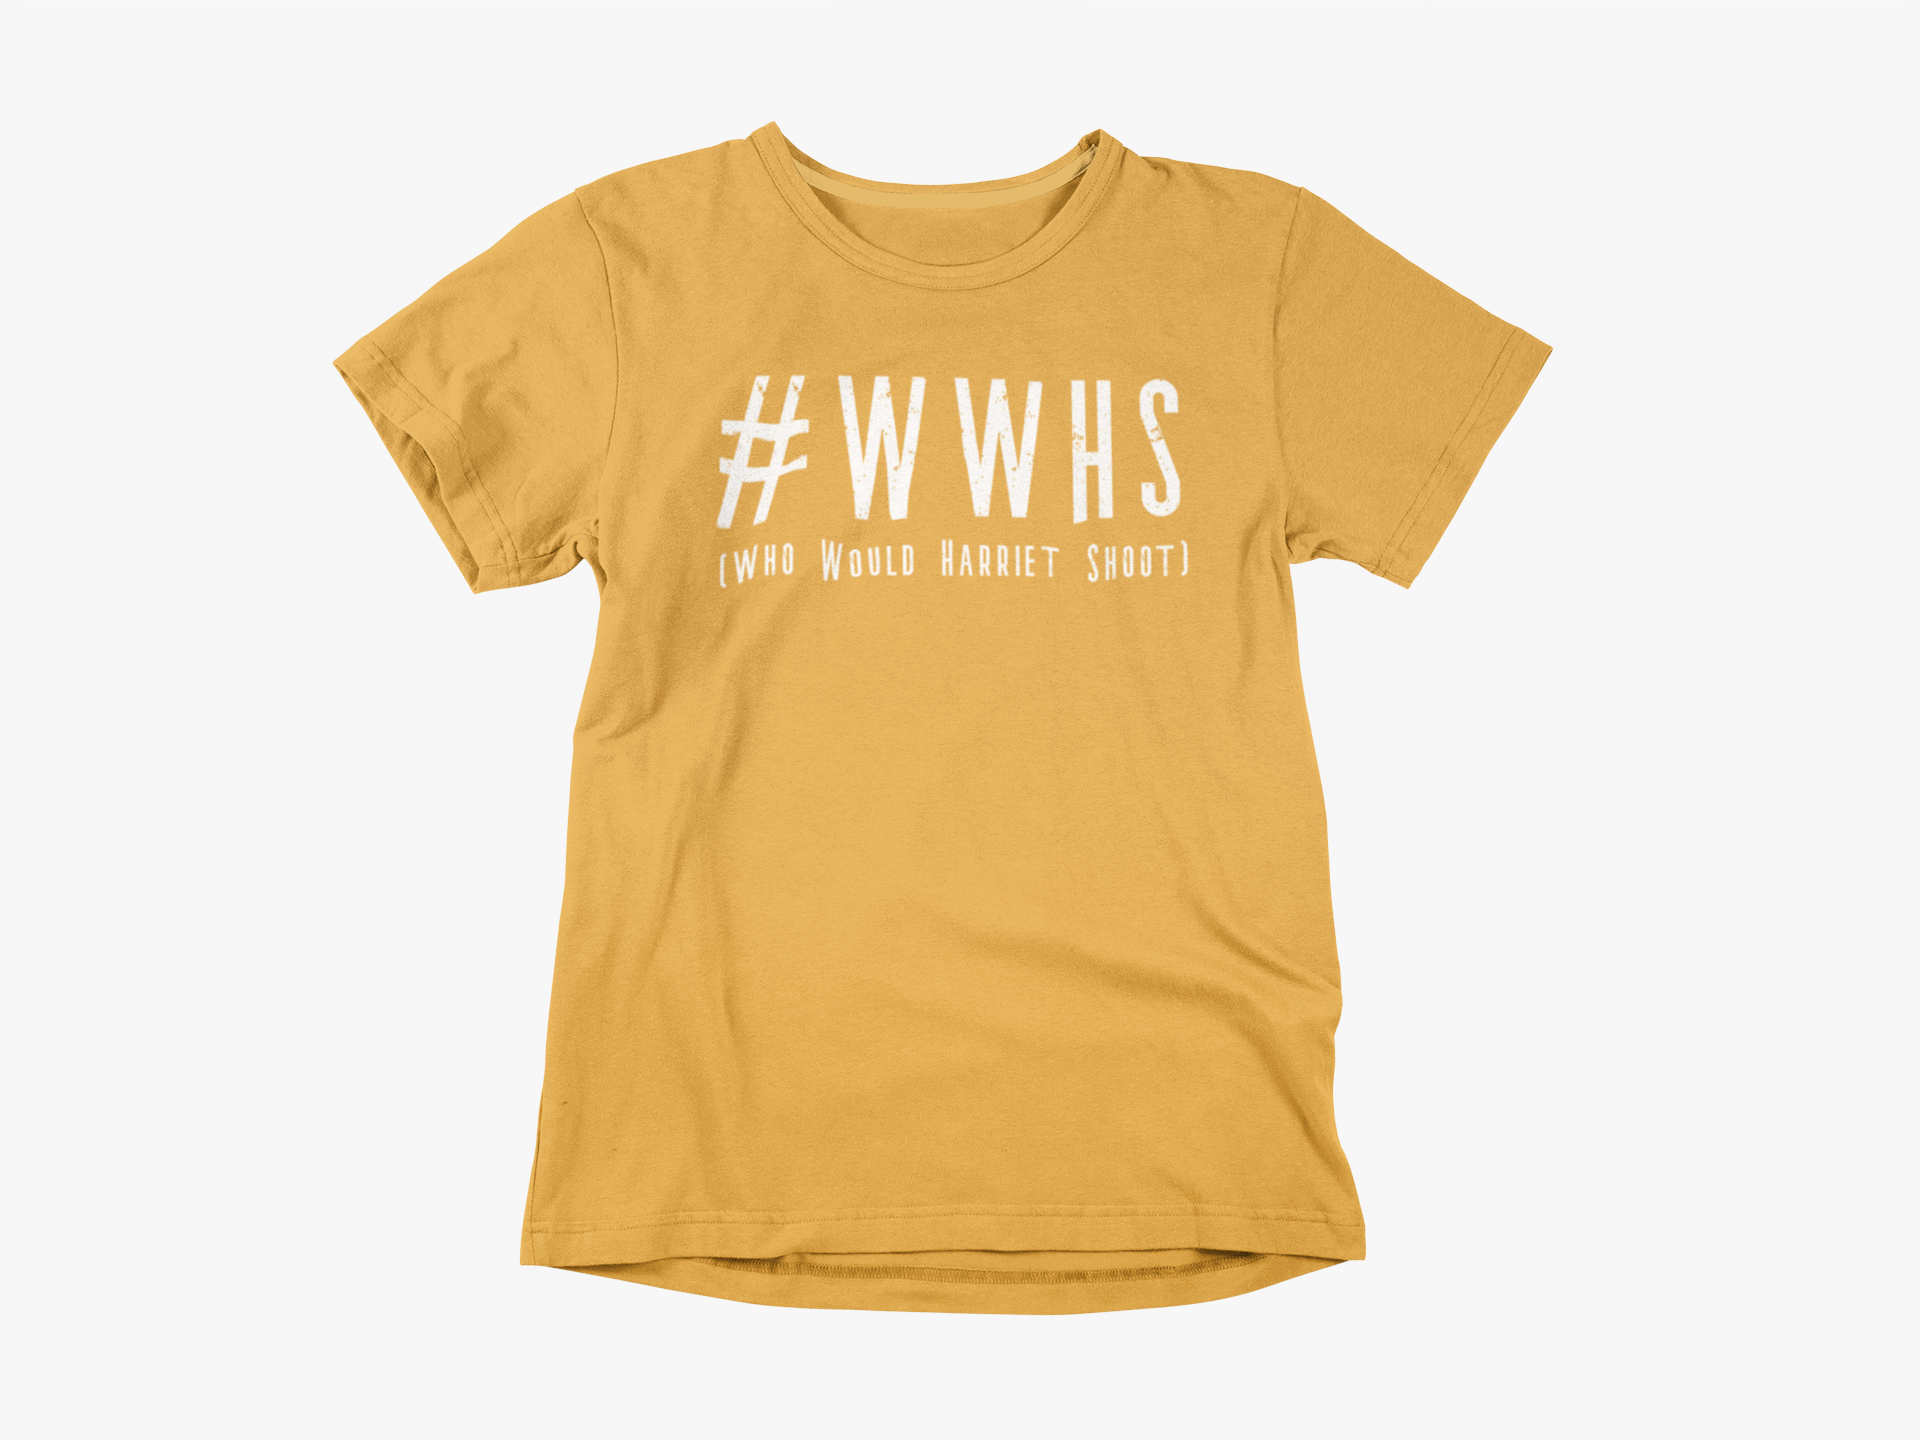 'WWHS' Short-Sleeve Women's T-Shirt